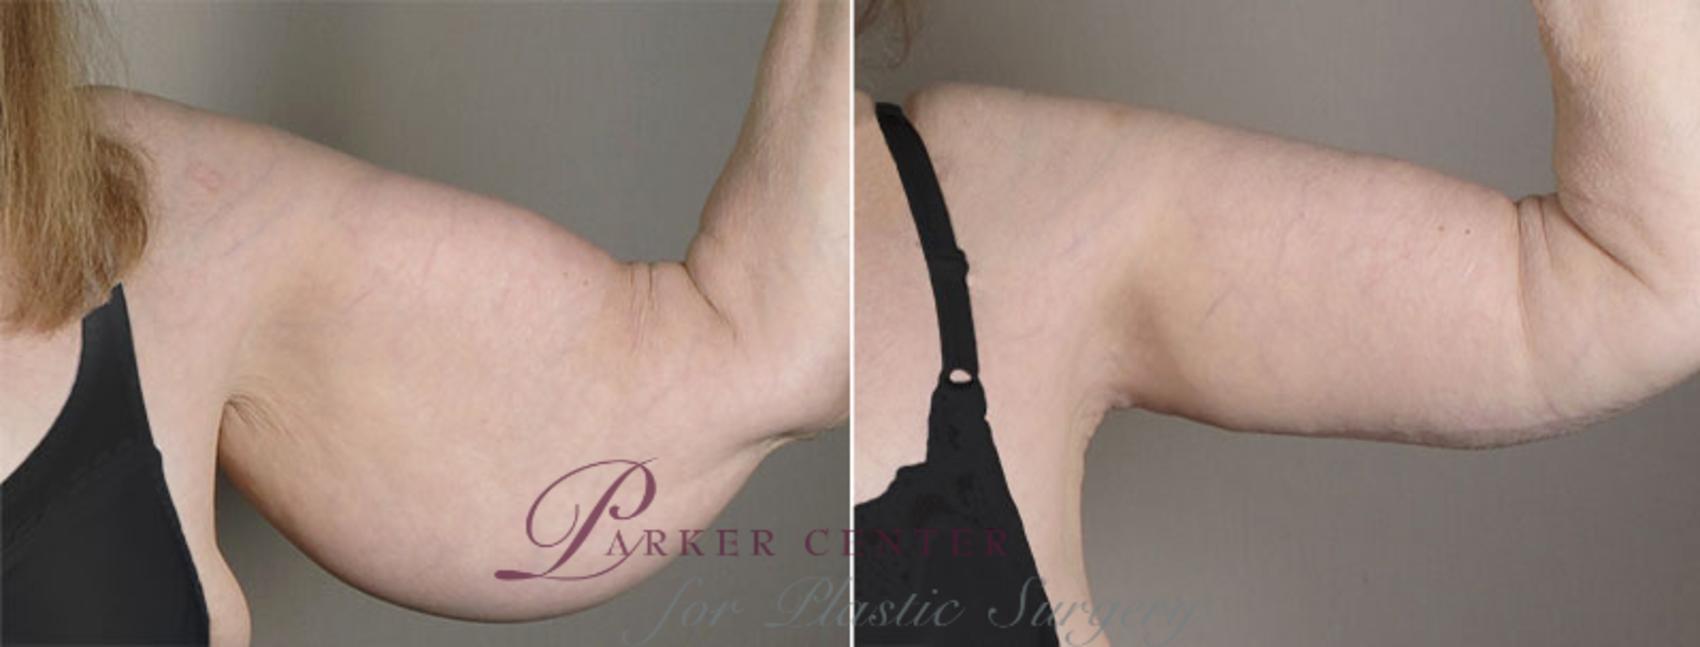 Upper Arm Rejuvenation Case 821 Before & After View #2 | Paramus, NJ | Parker Center for Plastic Surgery